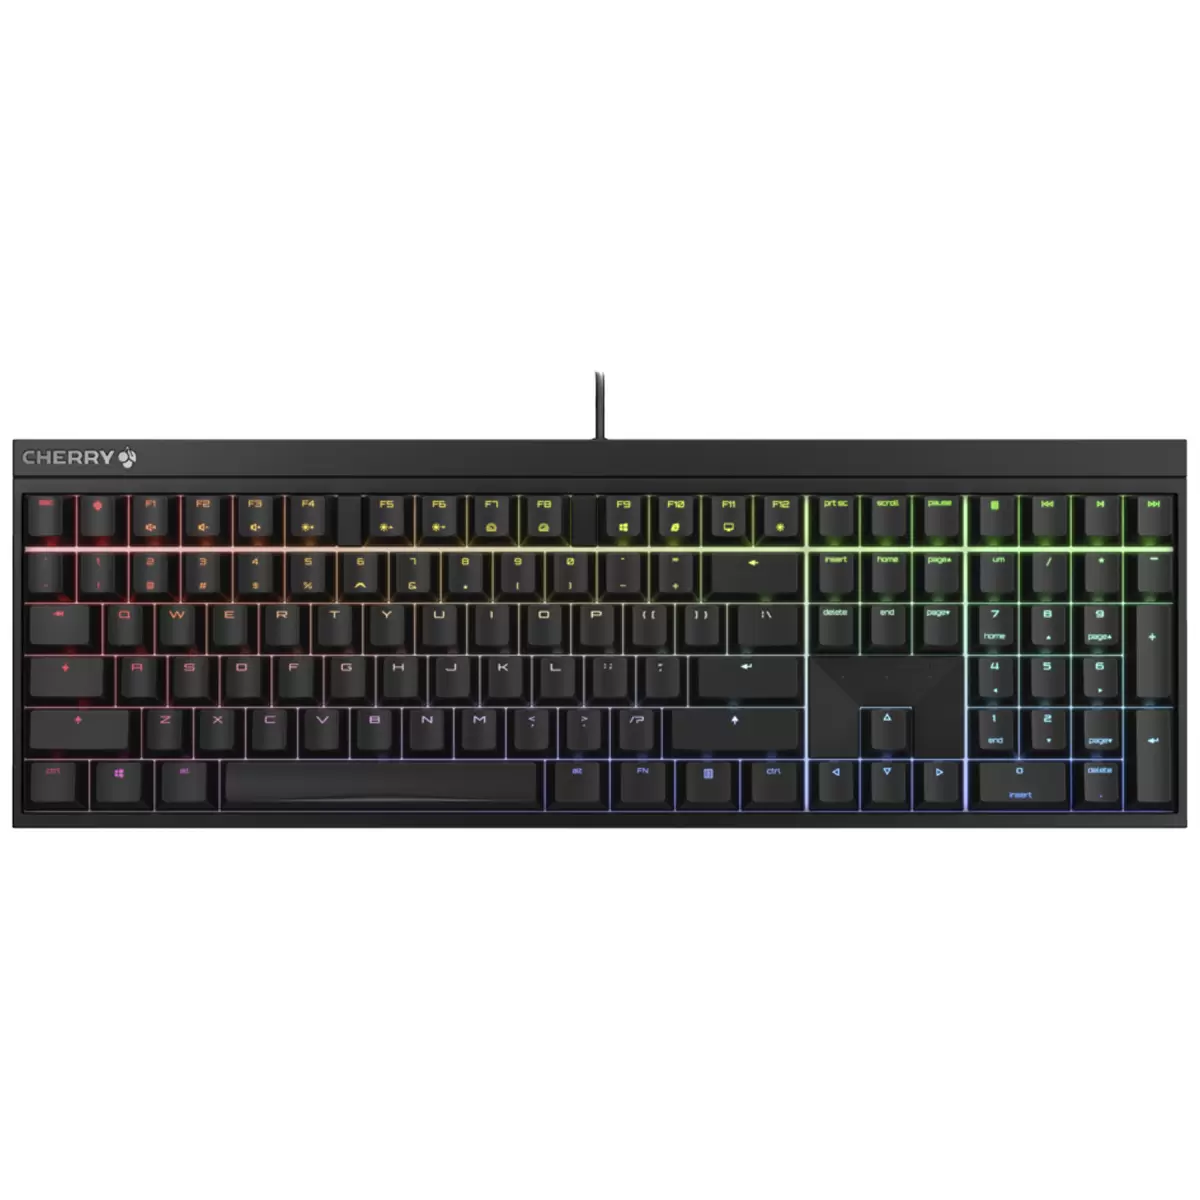 CHERRY MX 2.0S RGB Gaming Keyboard Black  G80-3821LXAEU-2